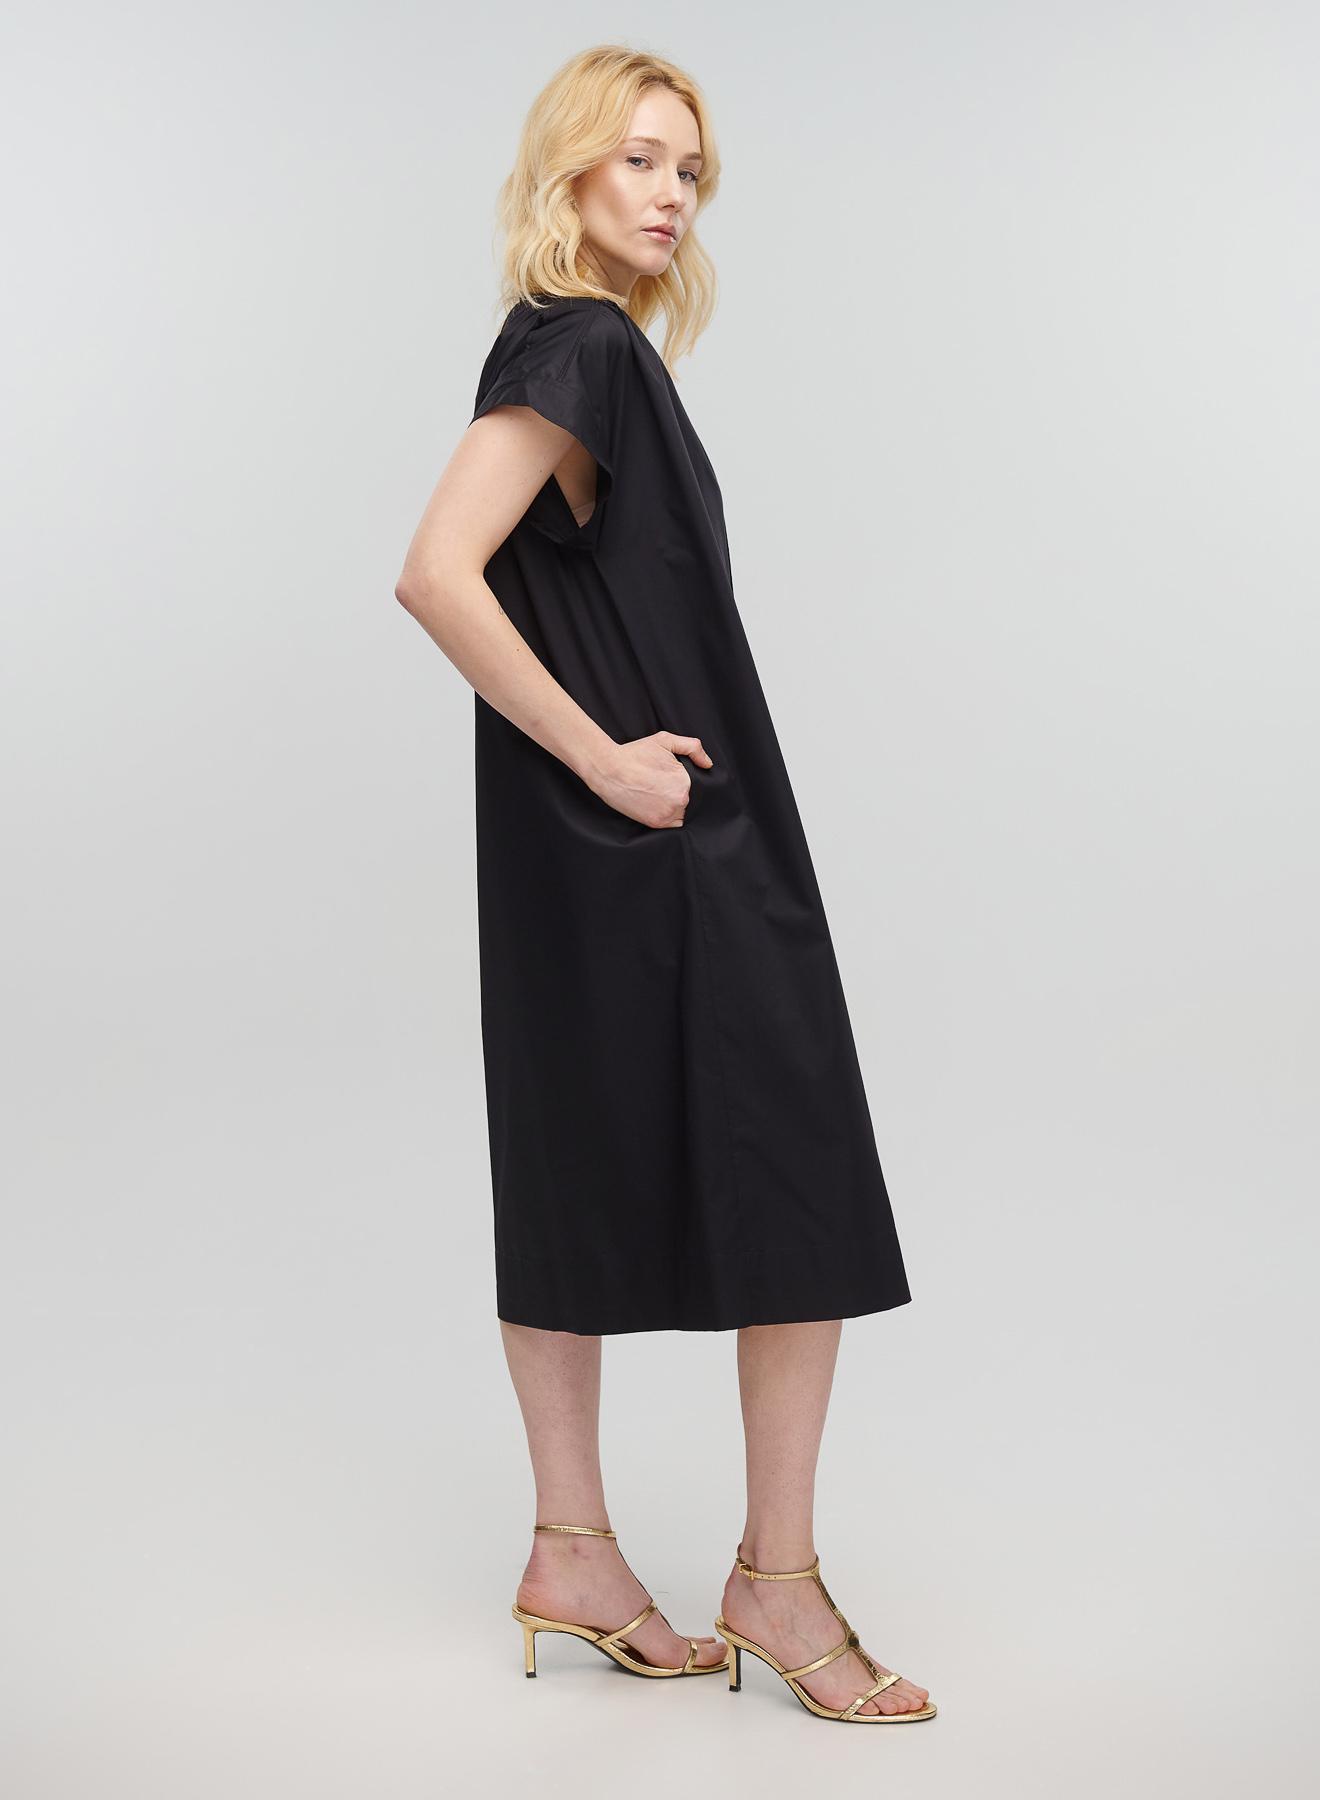 Μαύρο μακρύ Φόρεμα αμάνικο με V λαιμόκοψη, ζώνη και σχισμή μπροστά Milla - 4